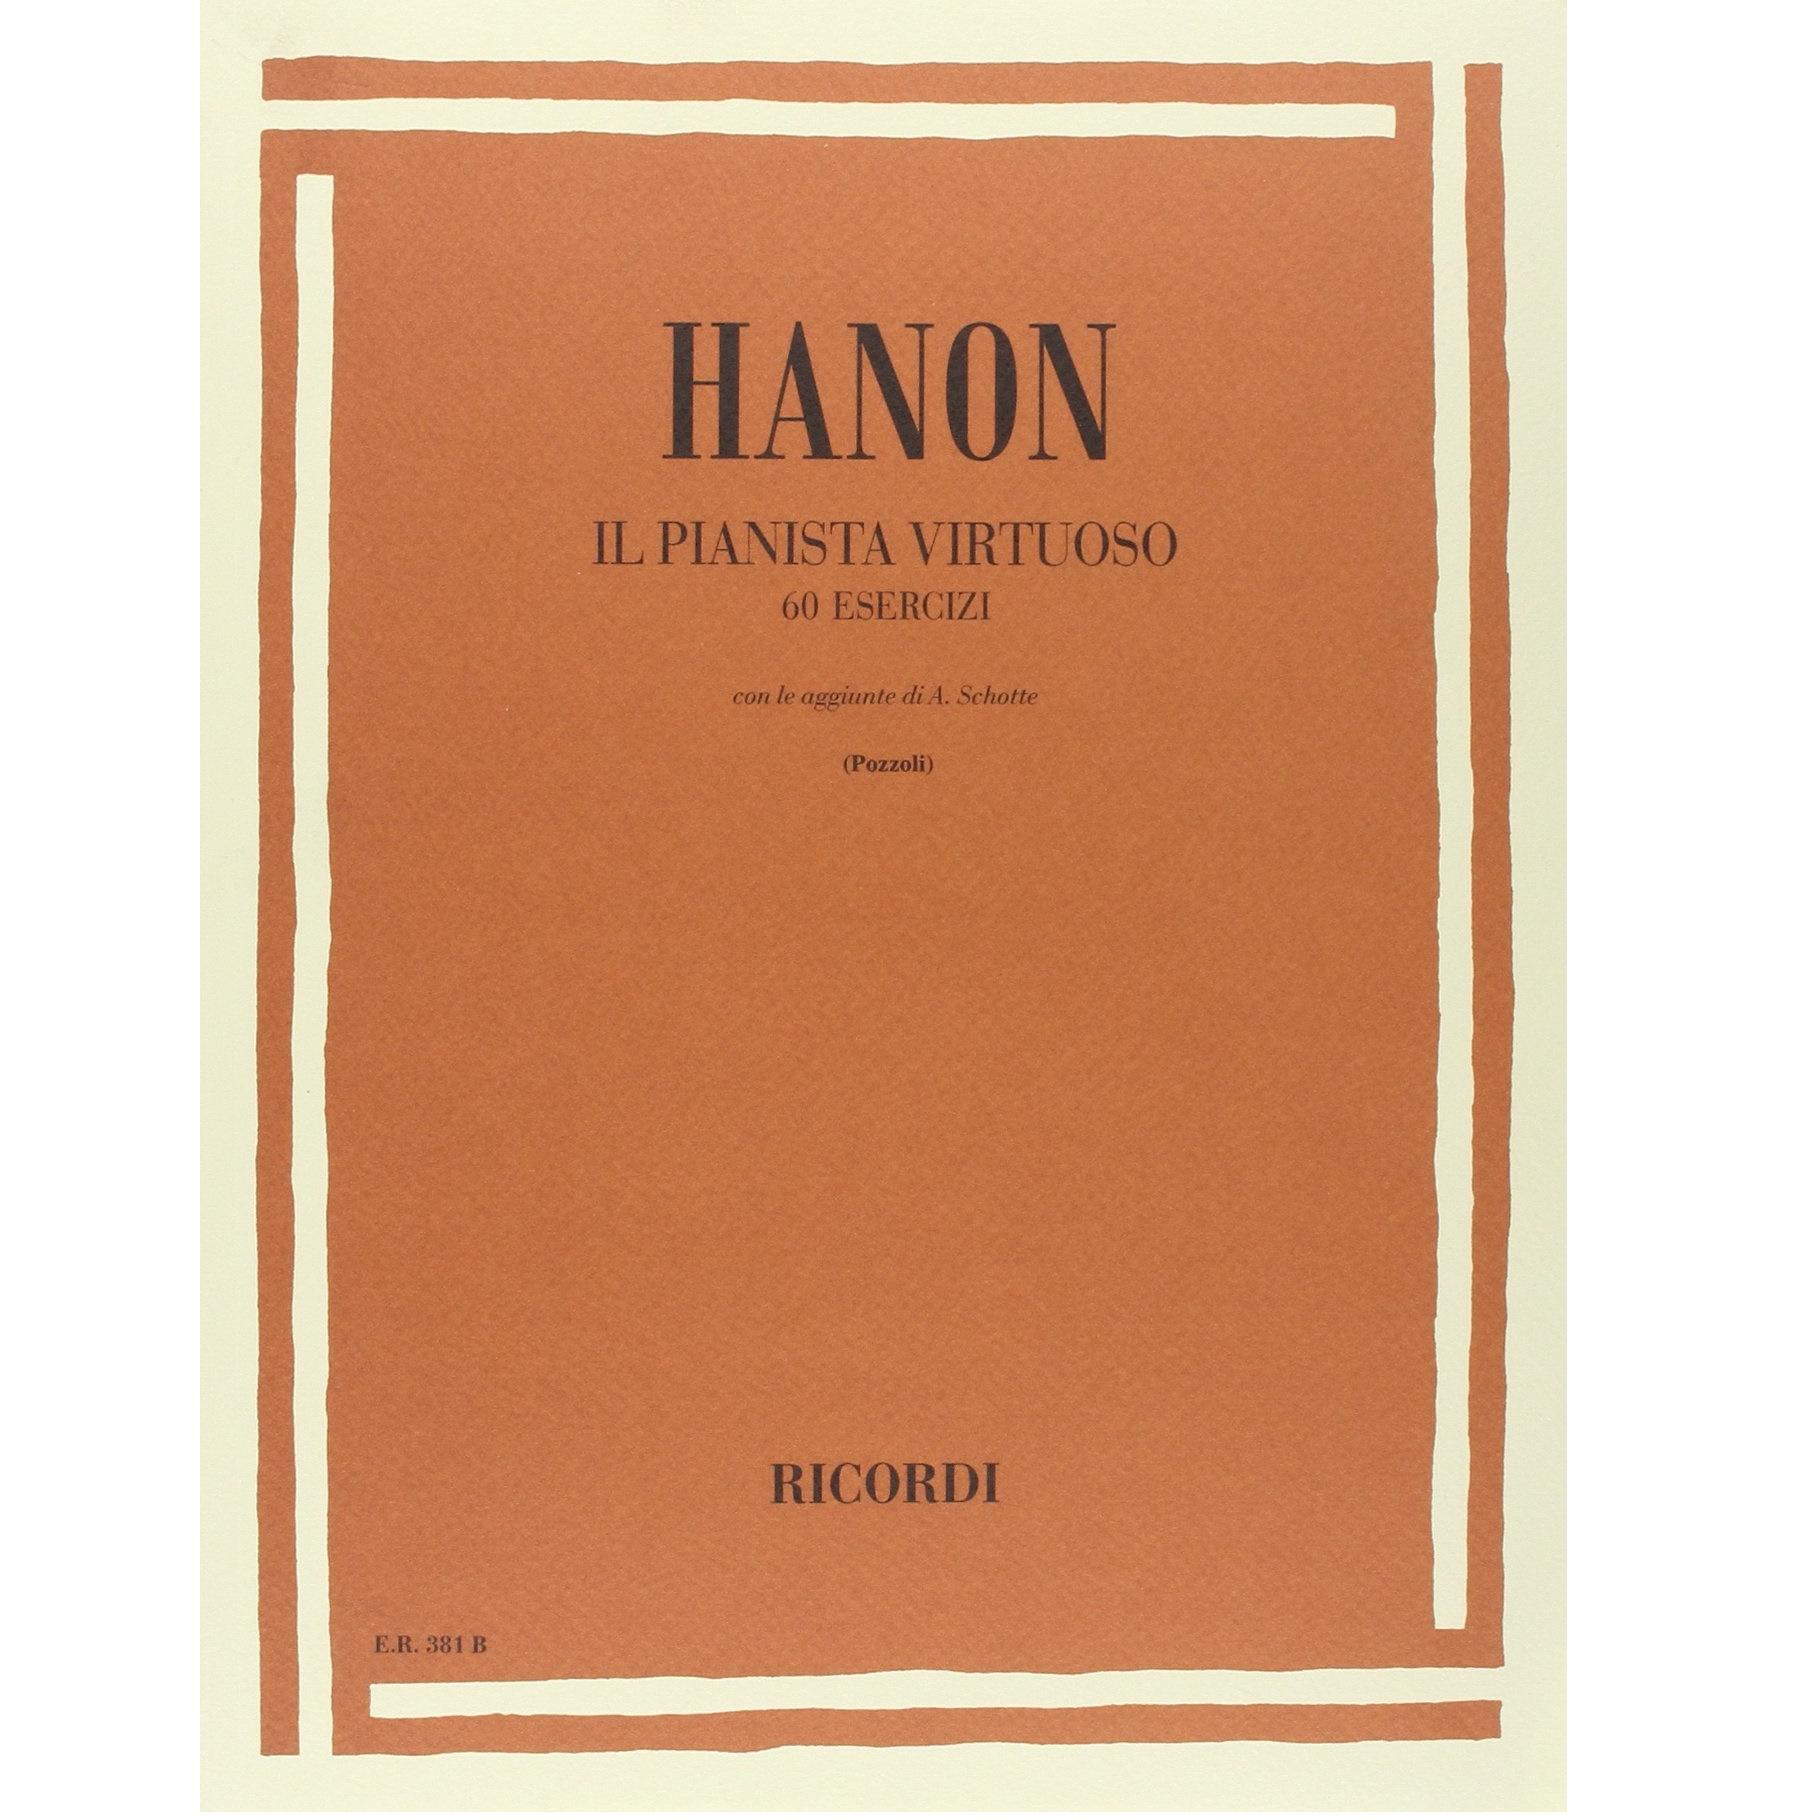 Hanon Il pianista virtuoso 60 esercizi con le aggiunte di Schotte (Pozzoli) - Ricordi